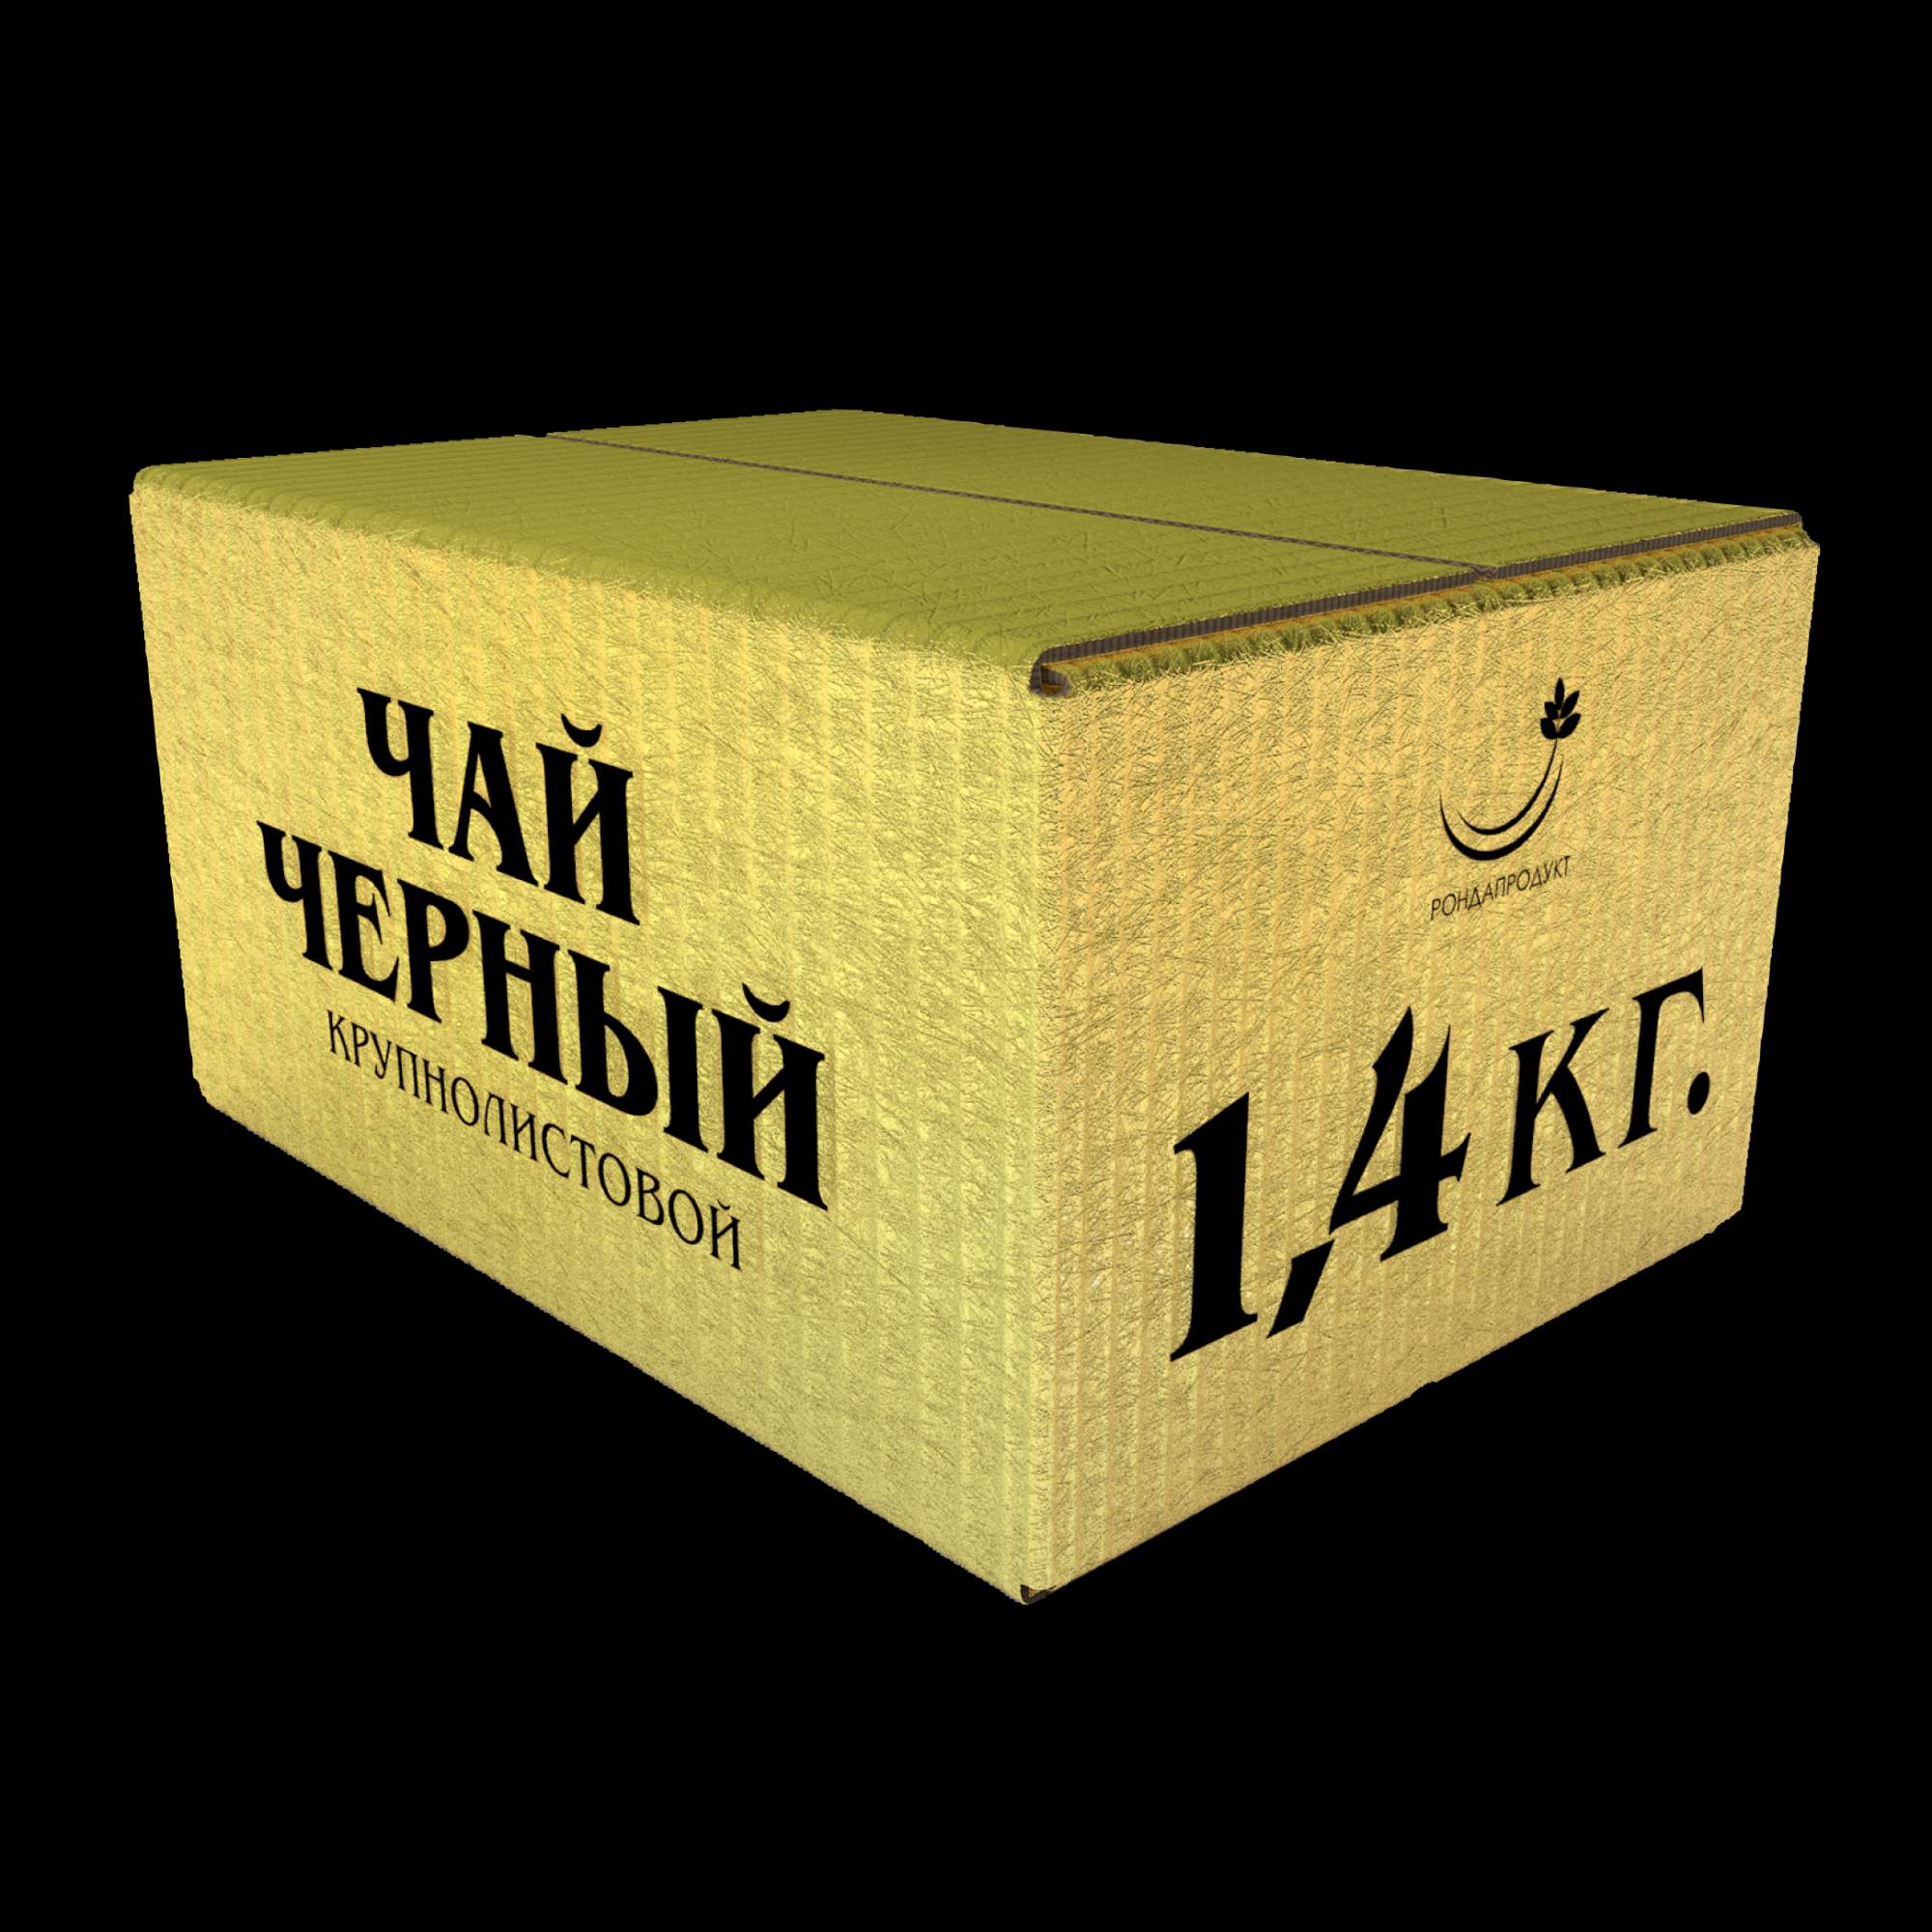 Чай Рондапродукт черный крупнолистовой ОРА STD 901 иранский, 1,4 кг